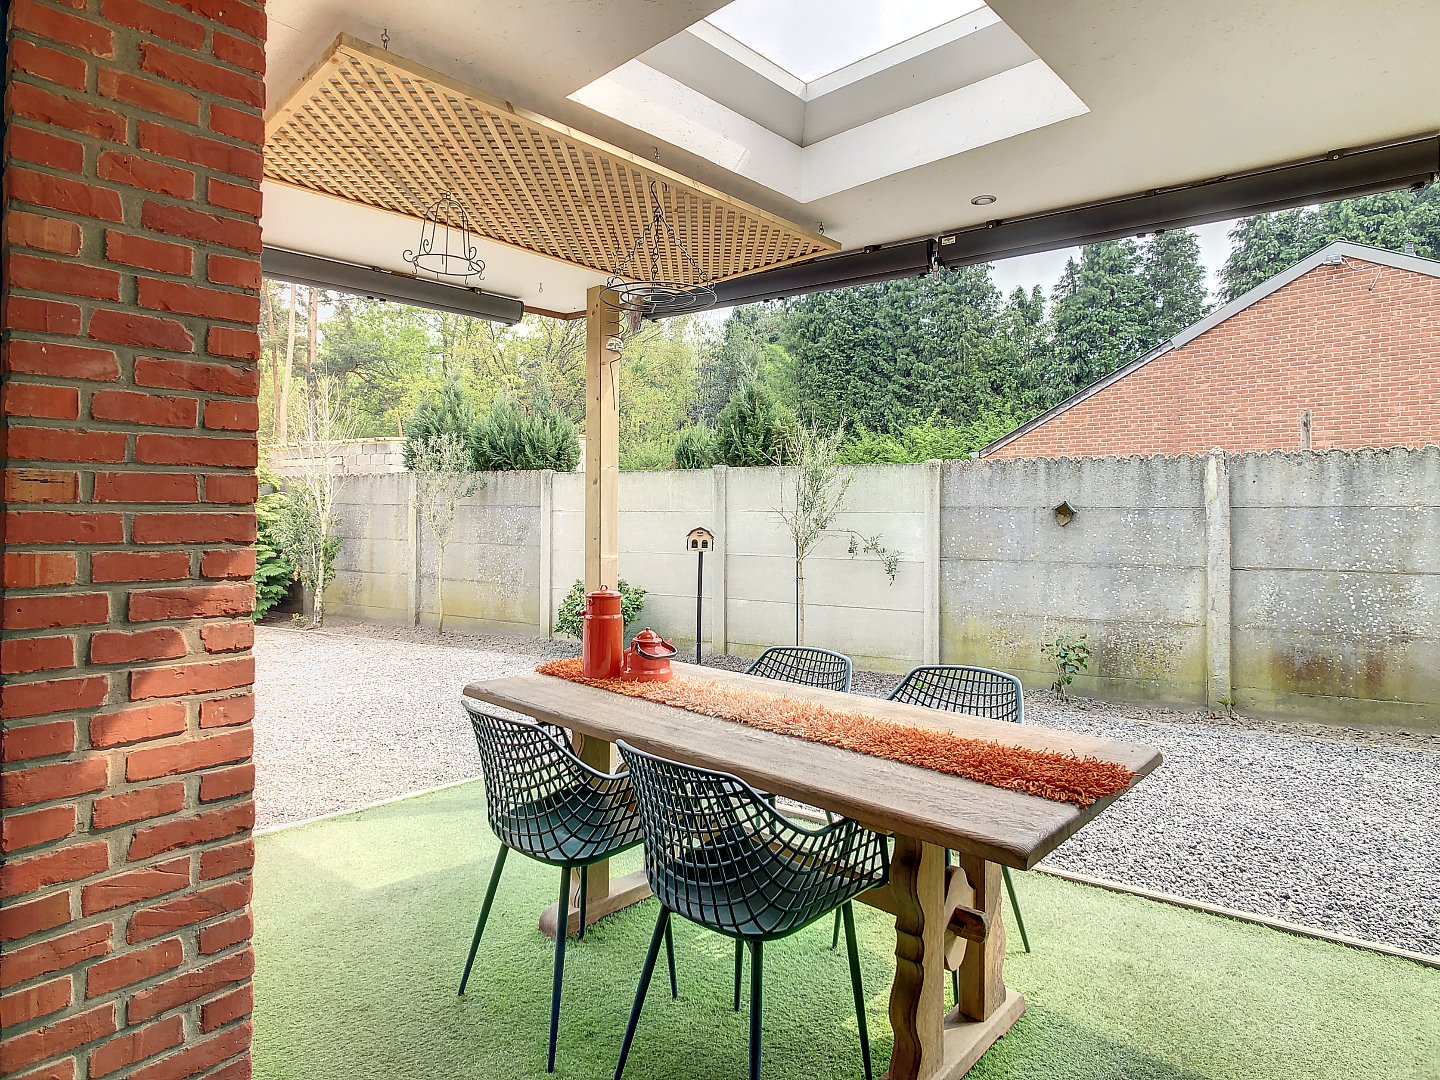 Geheel recent gemoderniseerde bungalow met garage en tuin. 